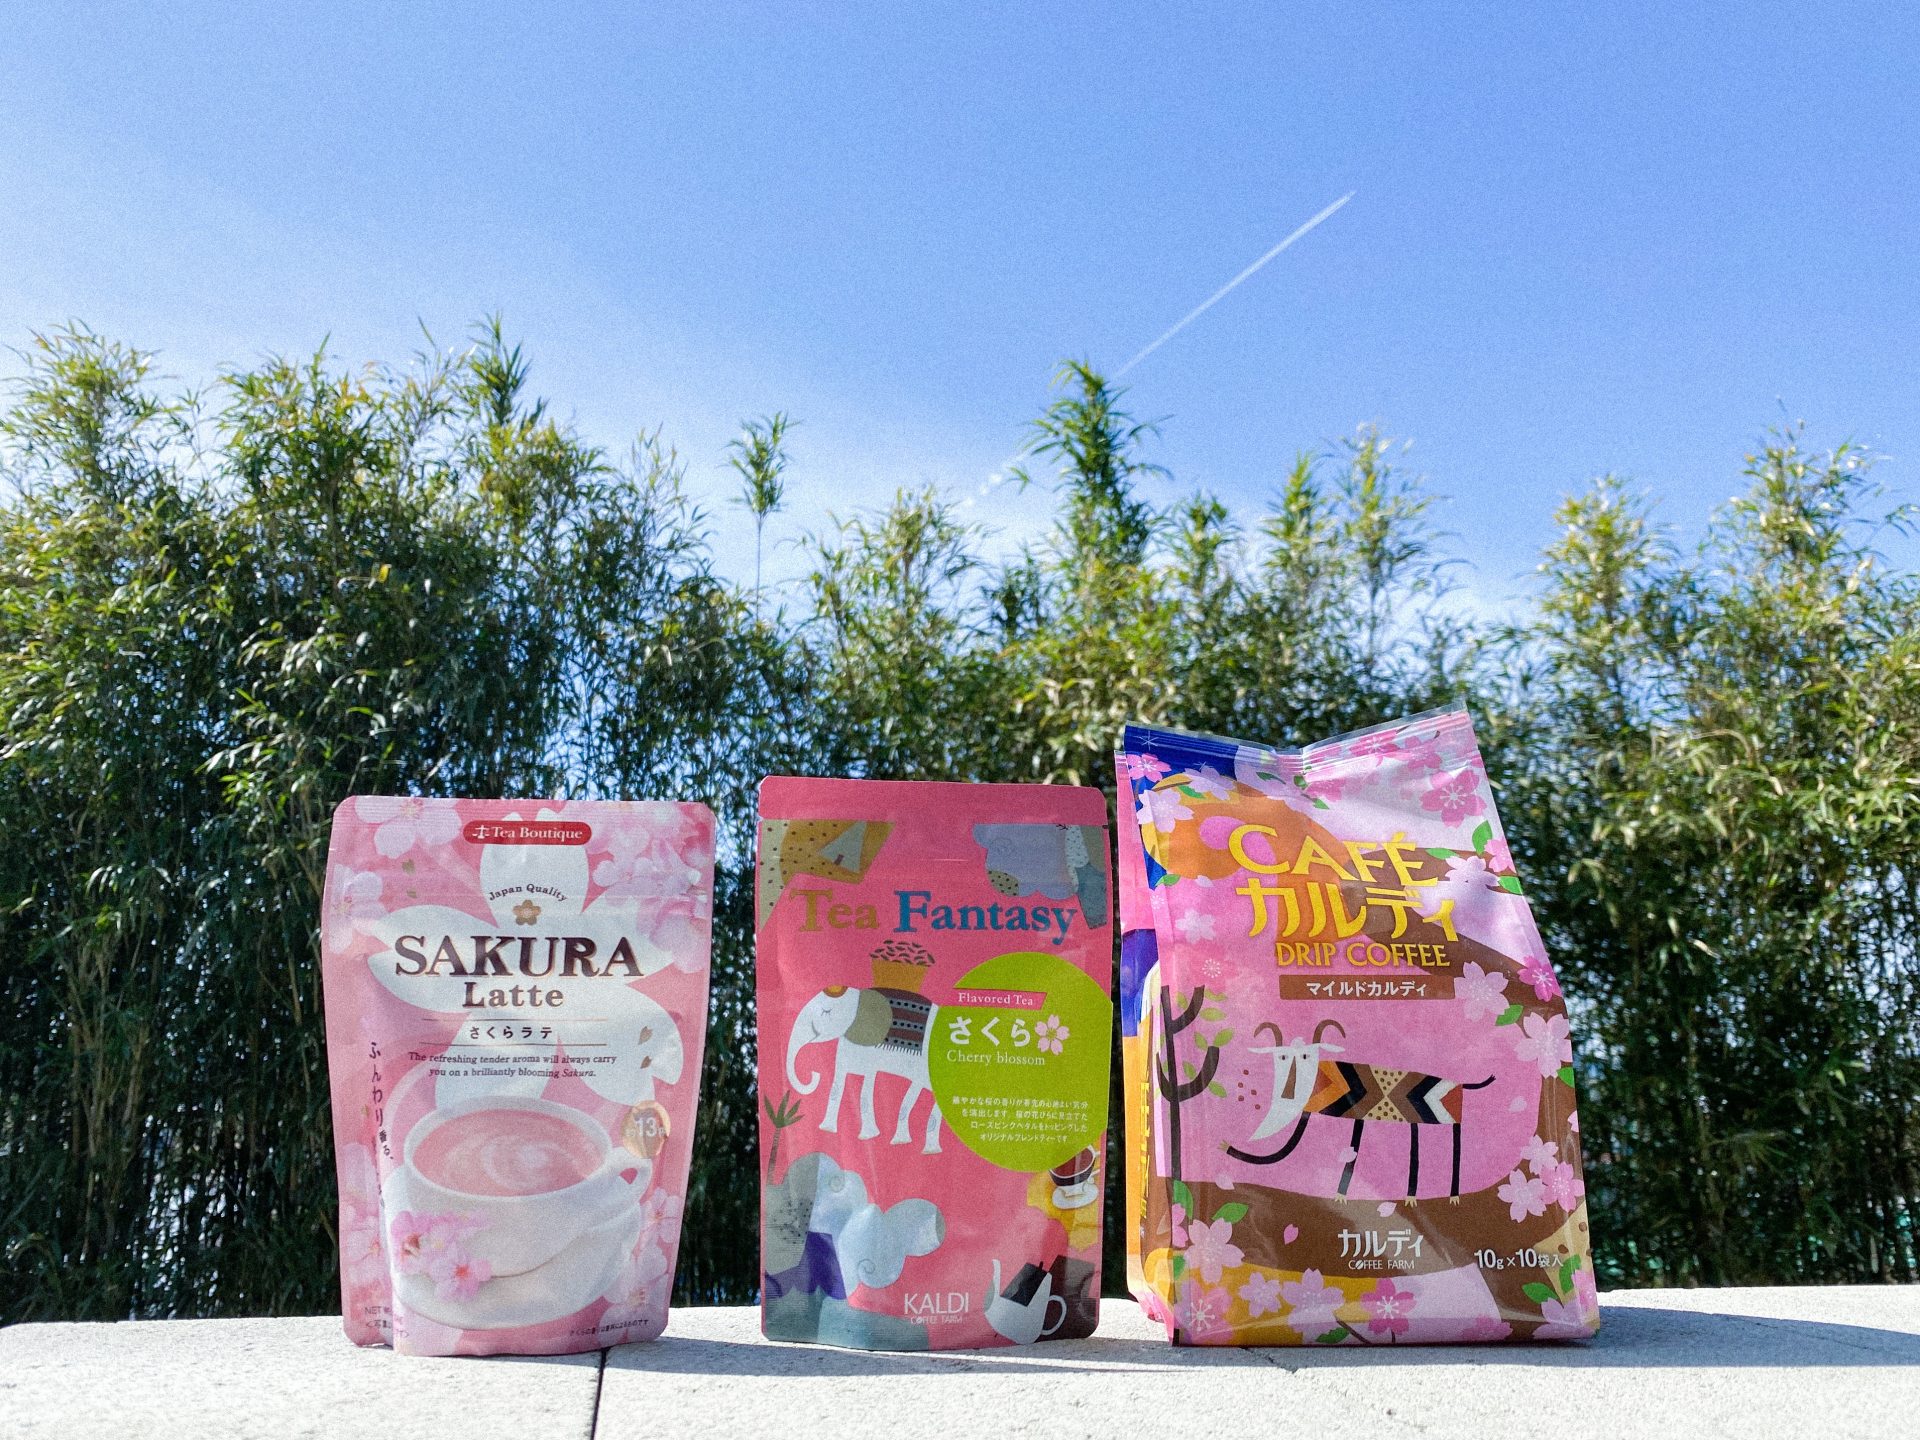 3月4日-桜色のパッケージで溢れる季節「KALDIさくら商品」